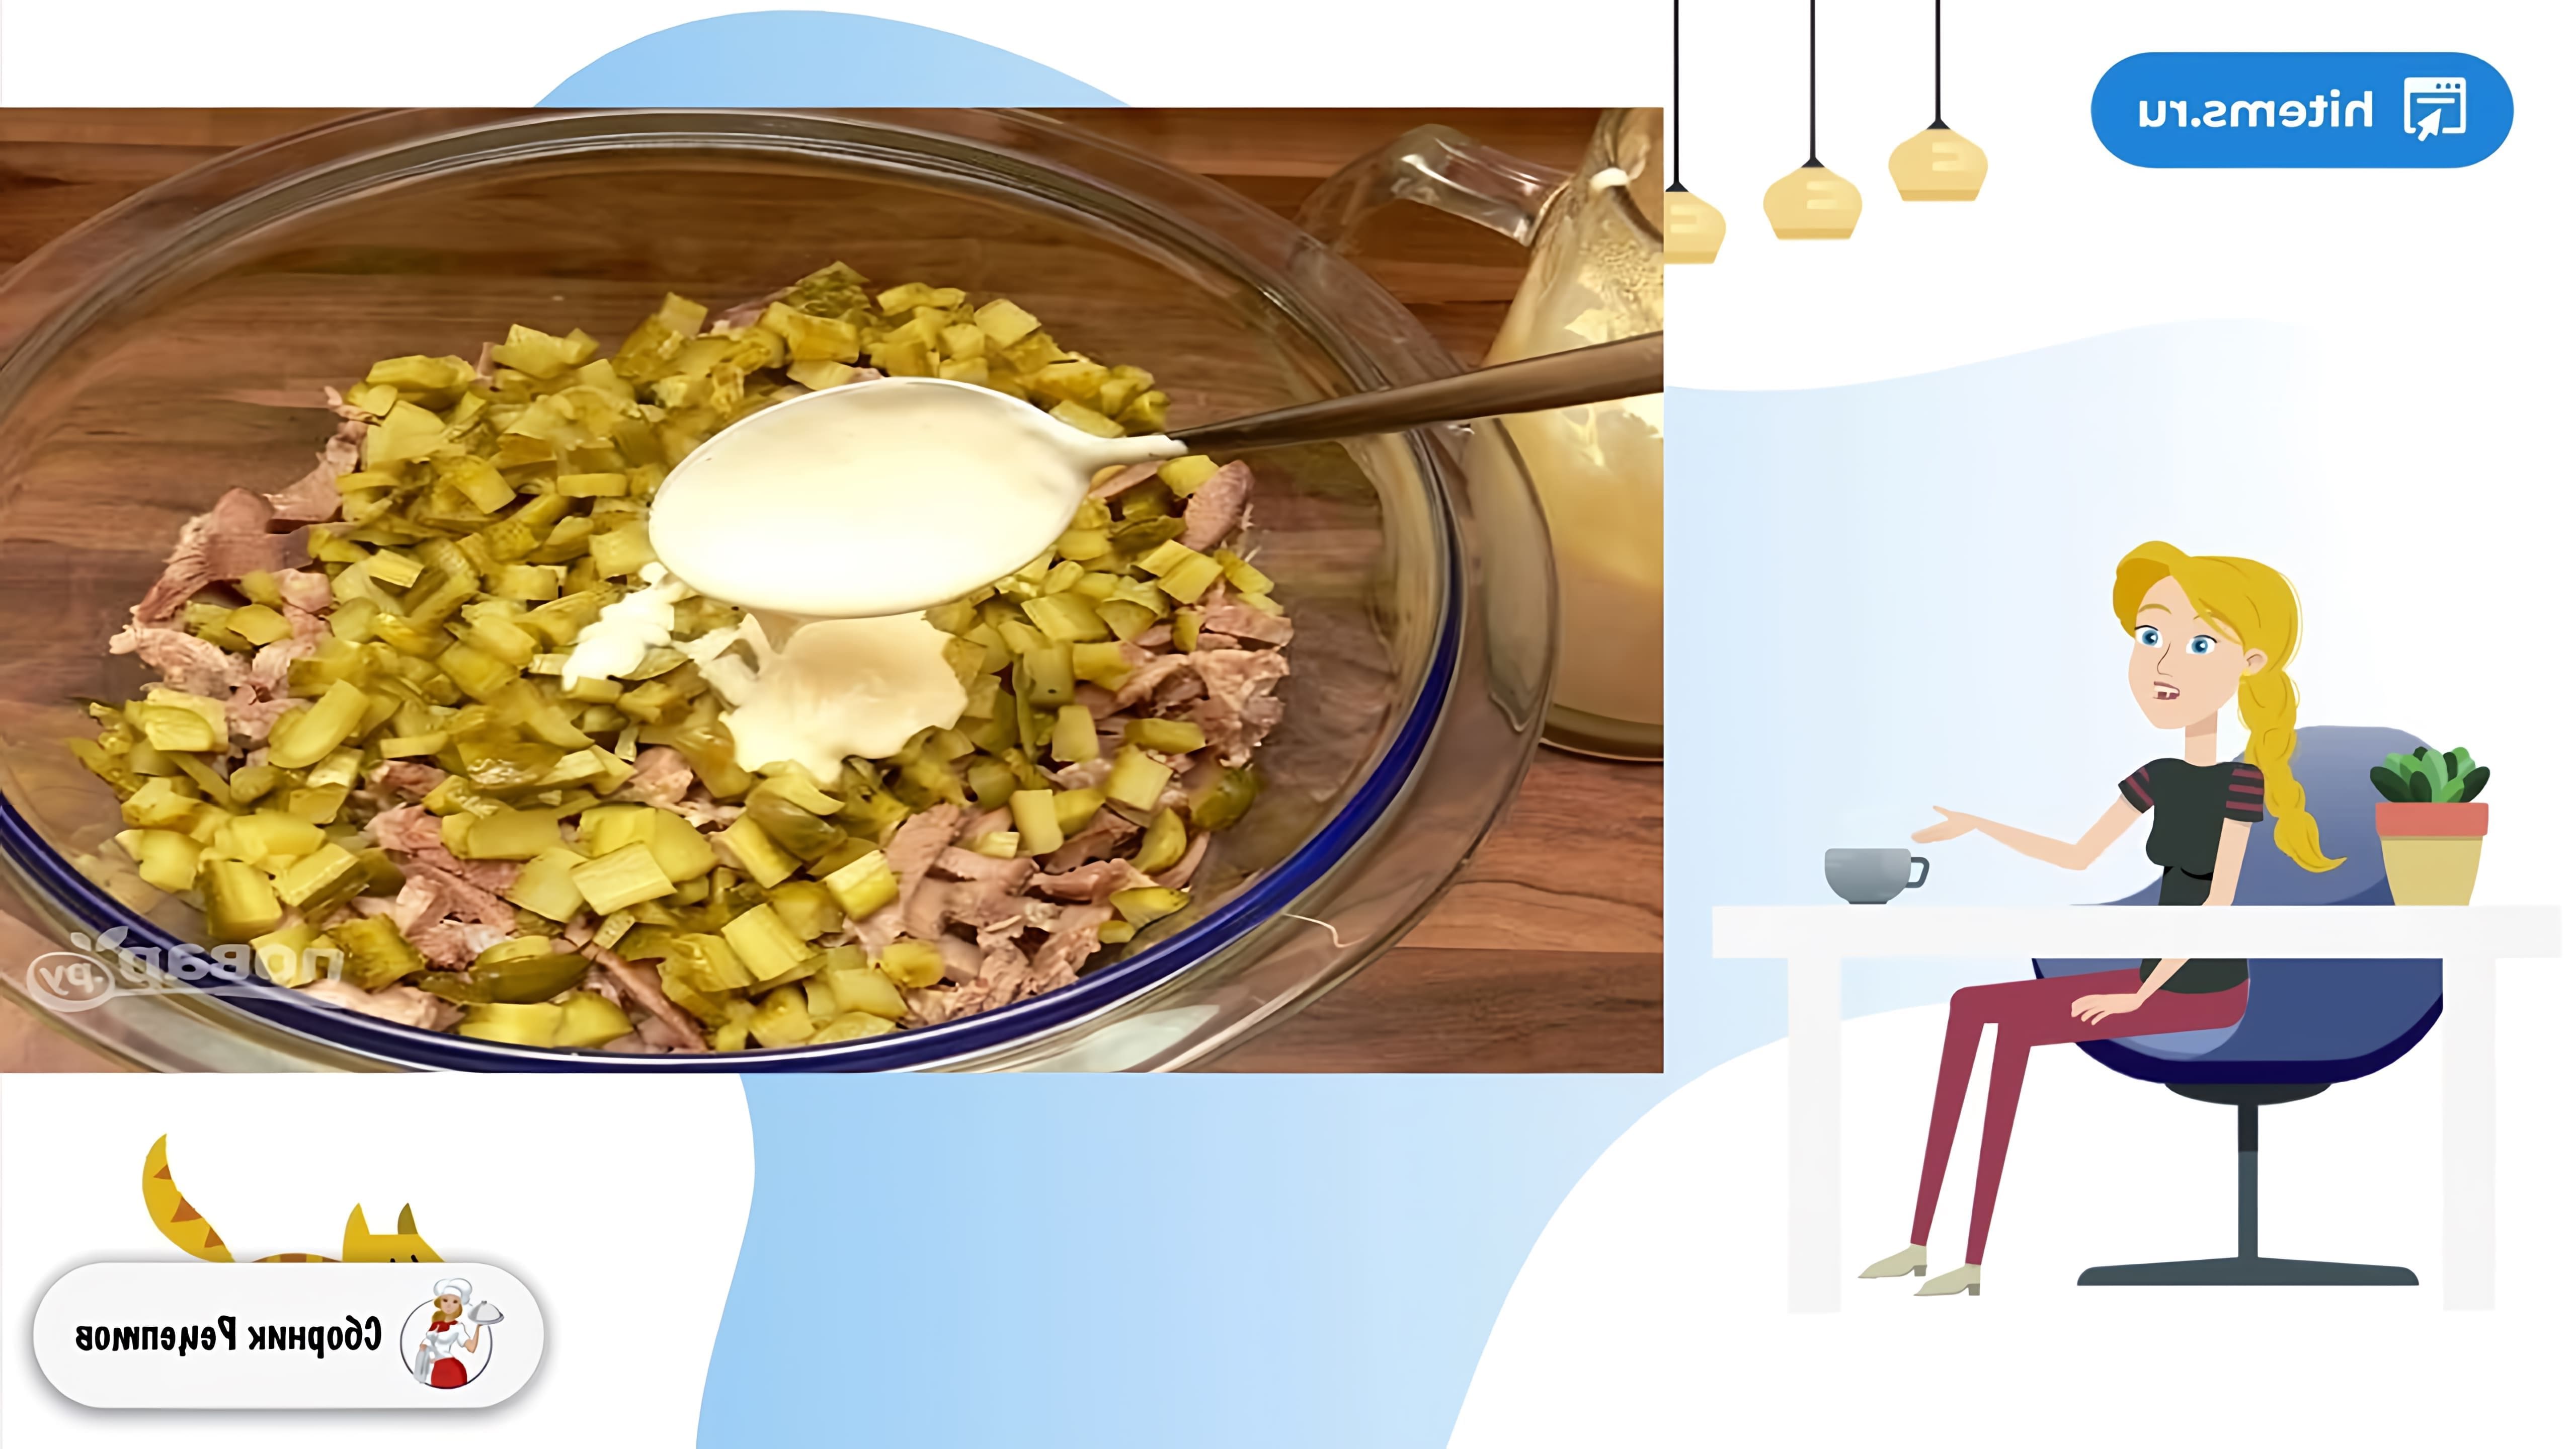 В этом видео демонстрируется рецепт приготовления салата с языком и огурцом